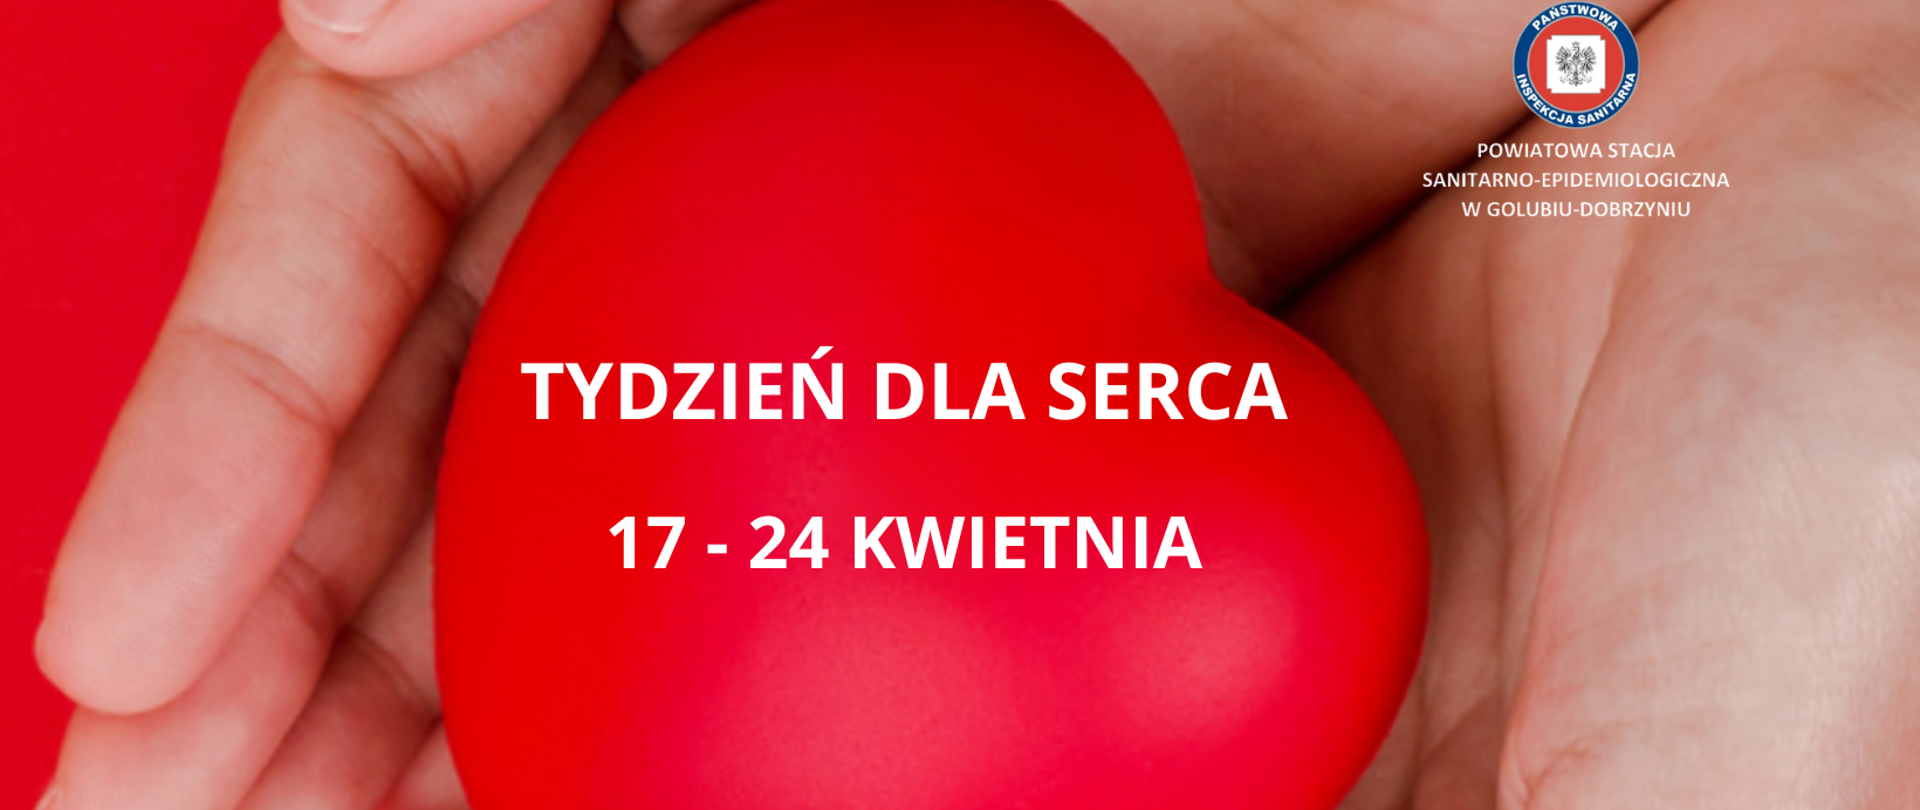 Od 17 do 24 kwietnia obchodzimy Tydzień dla Serca